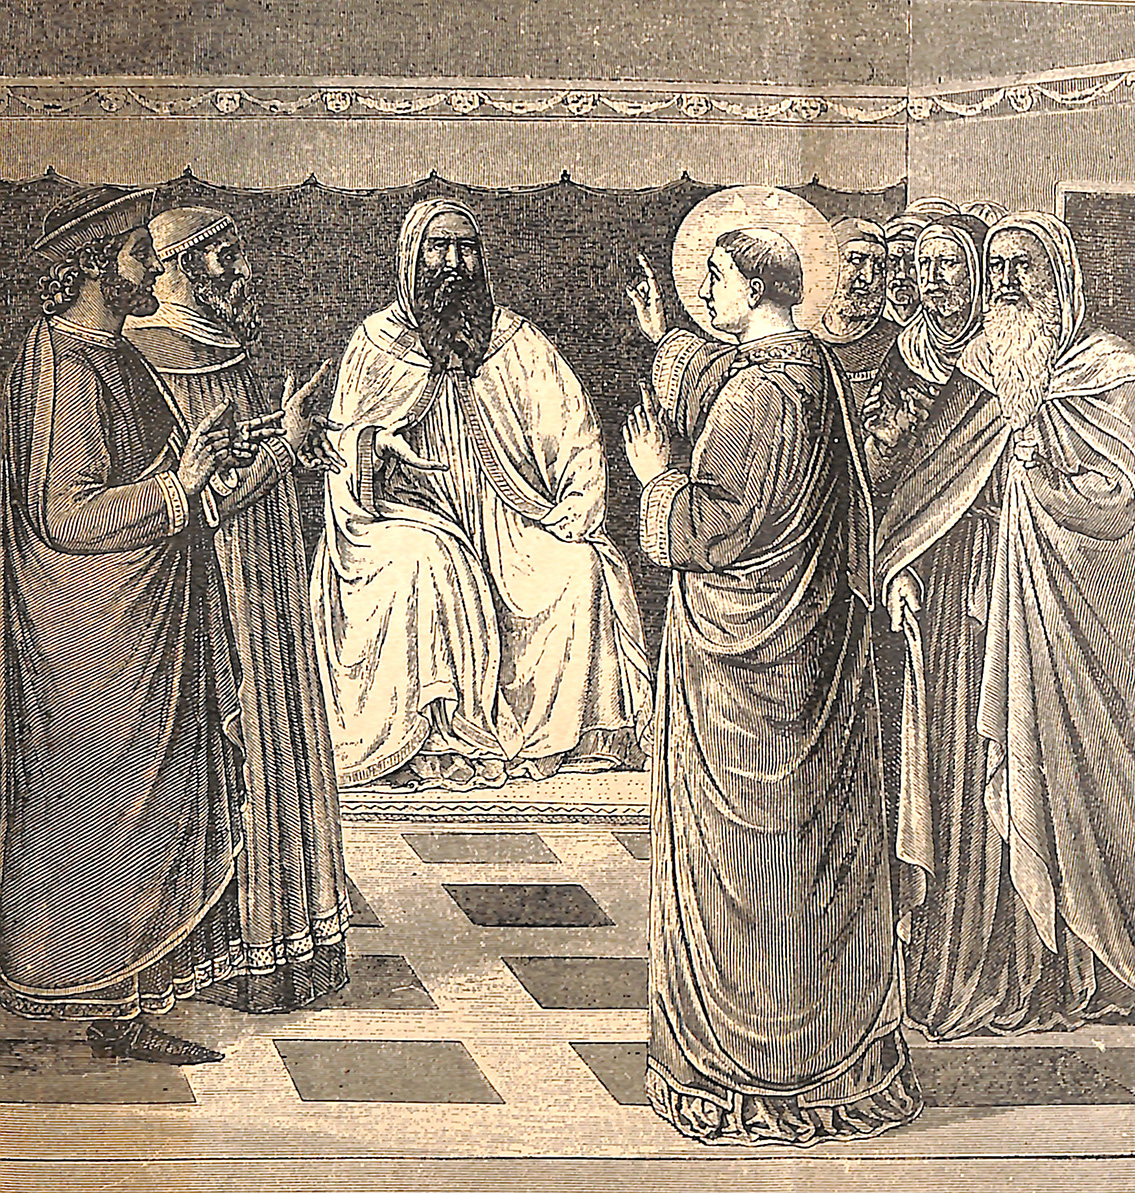 Pythagoras instructing Princes